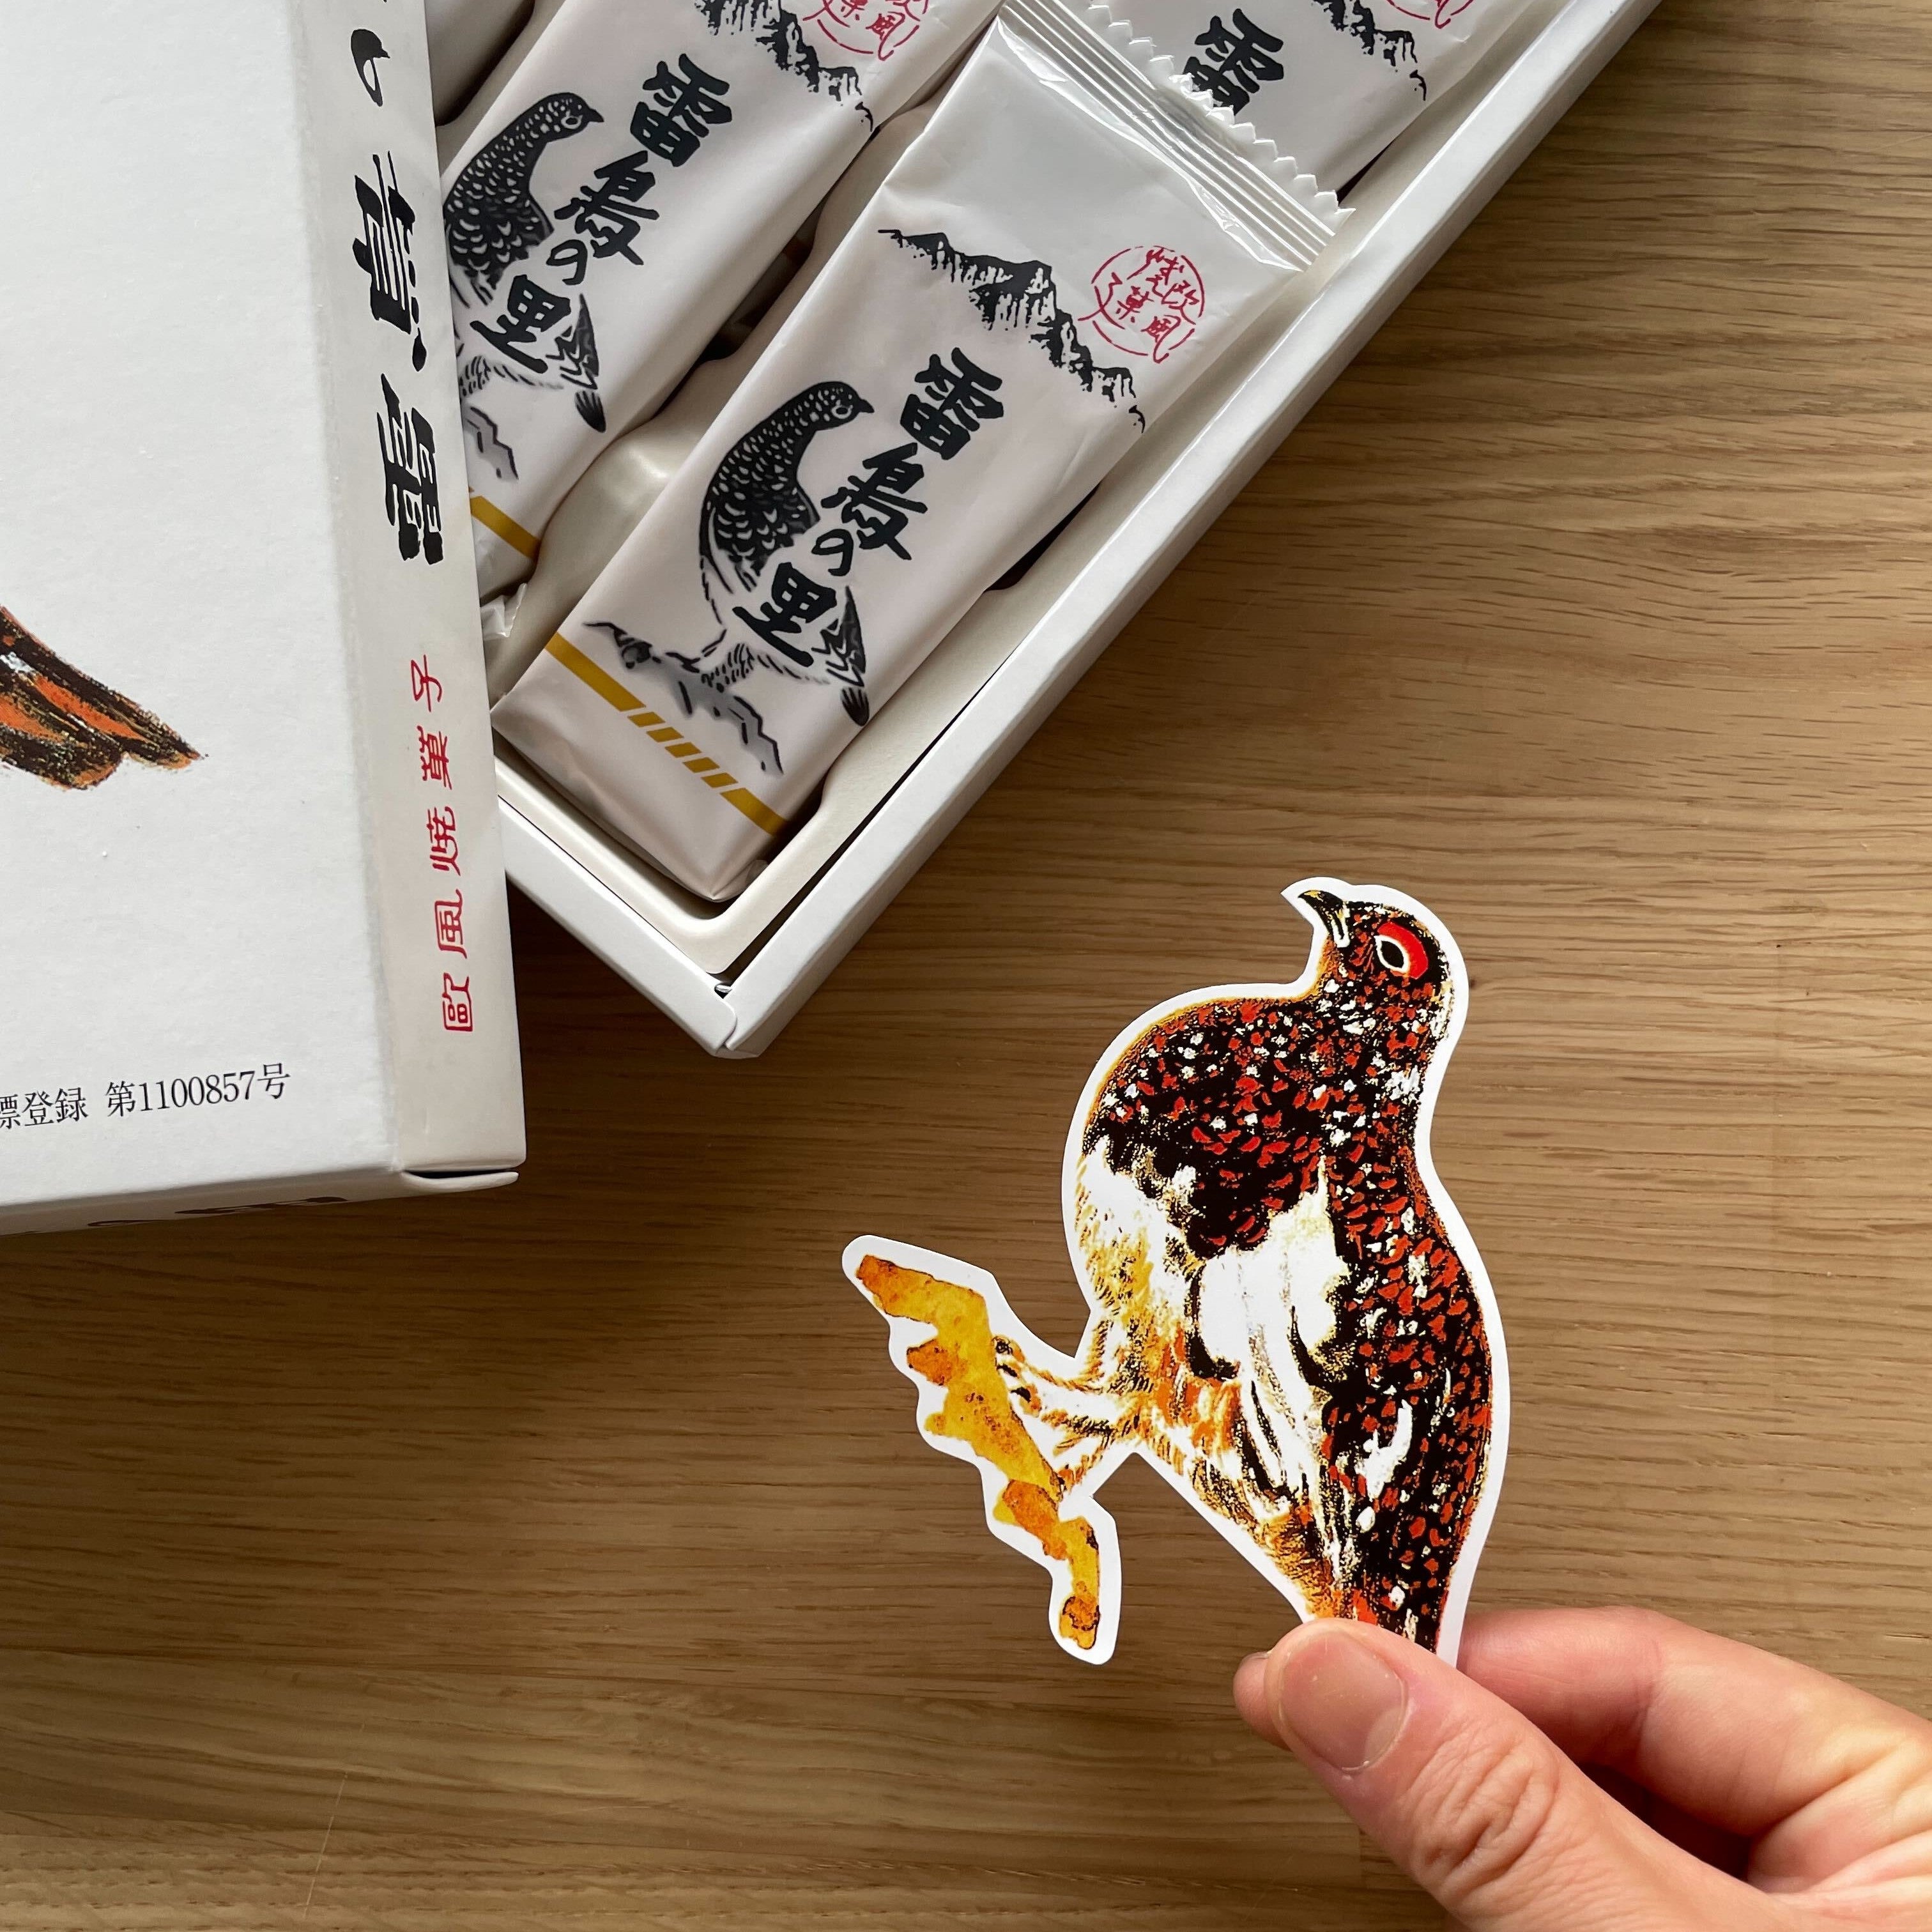 雷鳥は長野の県鳥。箱を開けるとかわいいカードも入っています。